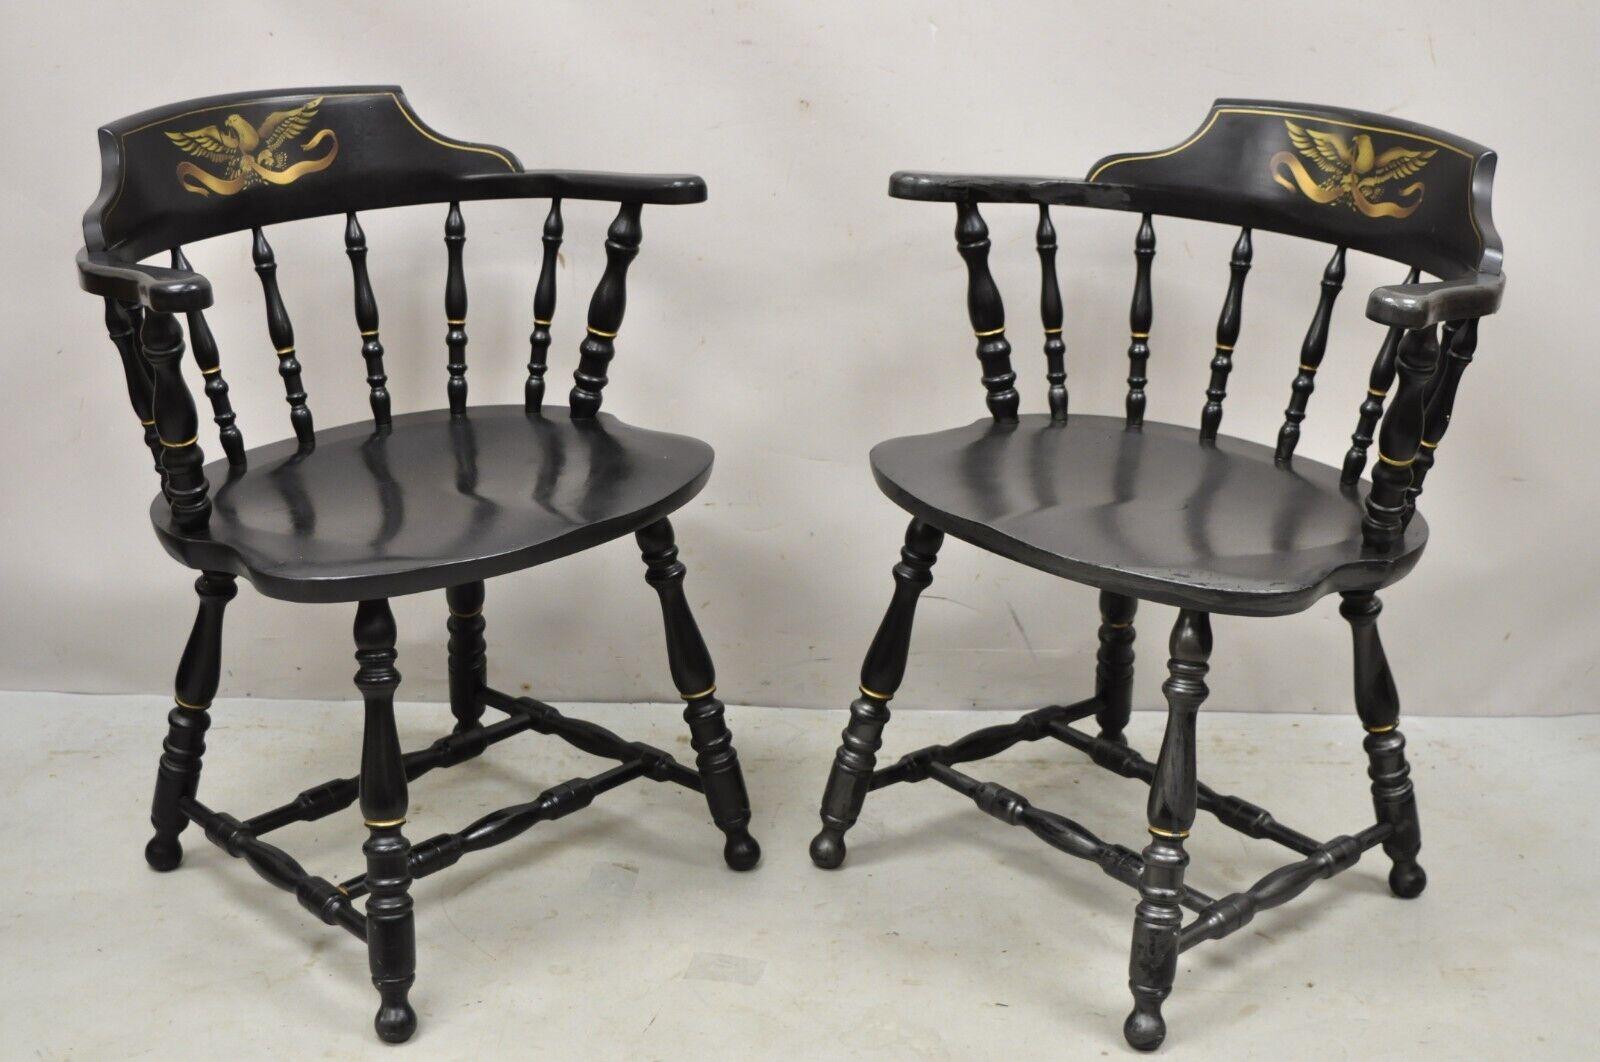 Vintage S. Bent & Bros chaises de style pub colonial avec aigle peint en noir - une paire. Cet article comporte un aigle doré sur le dossier, des dossiers en fuseau, une construction en bois massif, un Label d'origine, un artisanat américain de